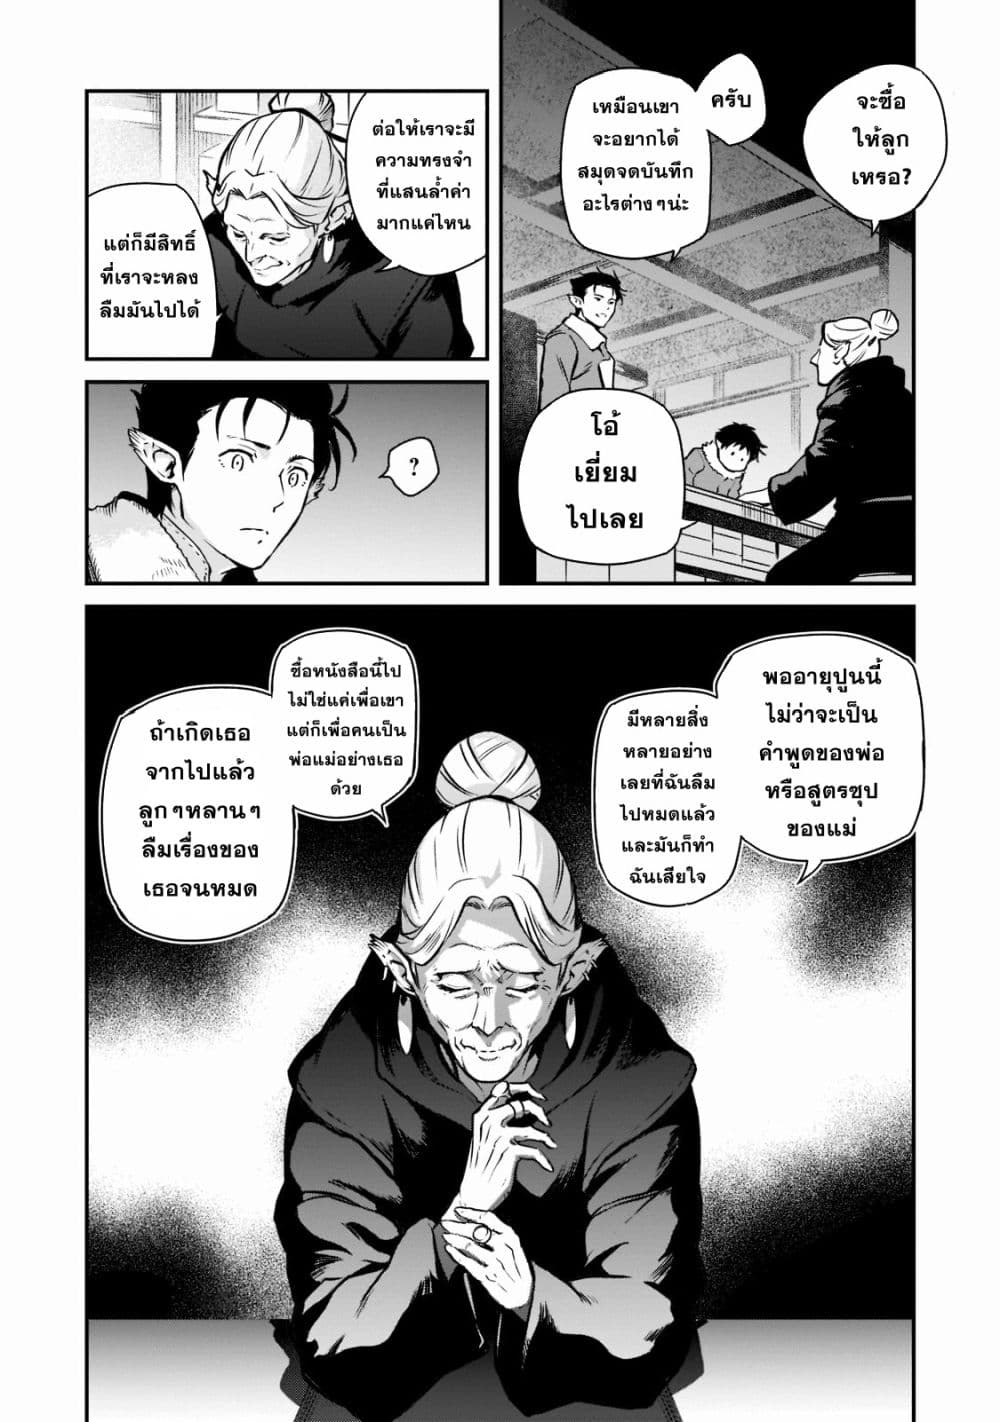 Horobi no Kuni no Seifukusha 2-2